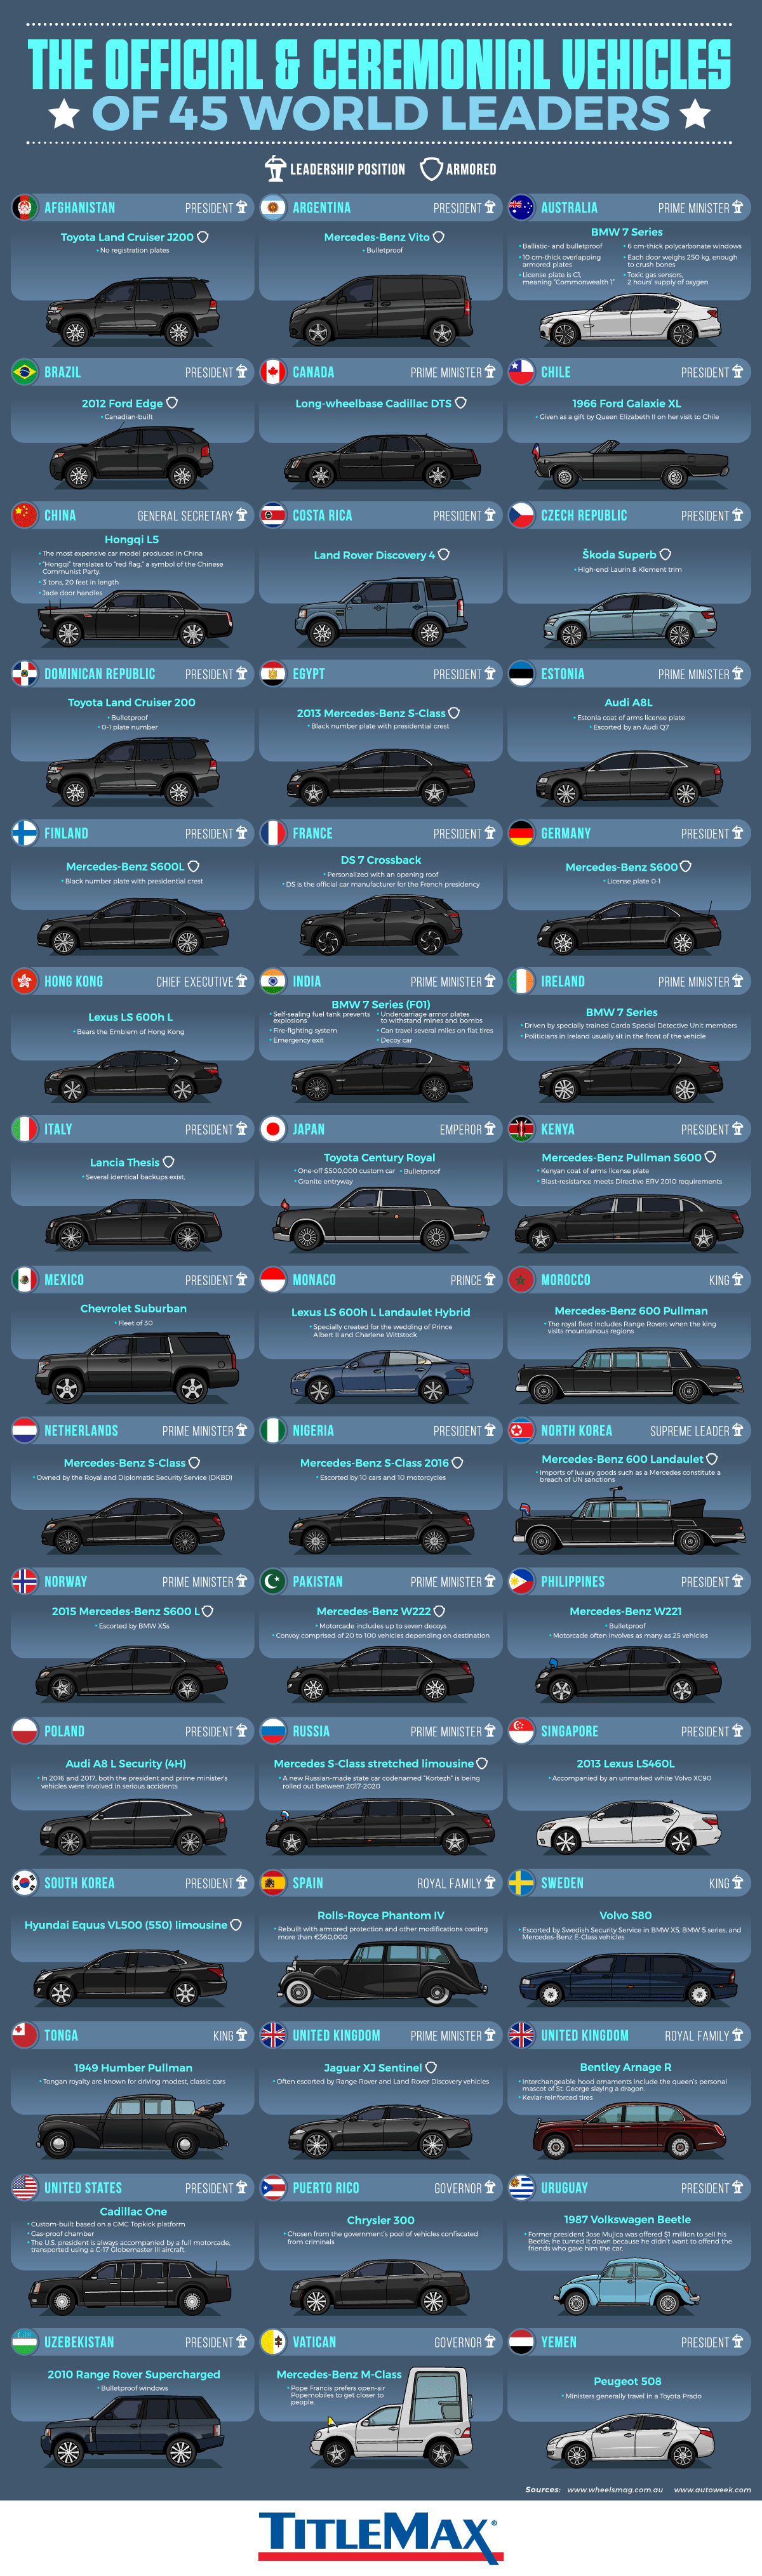  Церемониальные машины государственных служащих по всему миру - TitleMax.com - Инфографика 